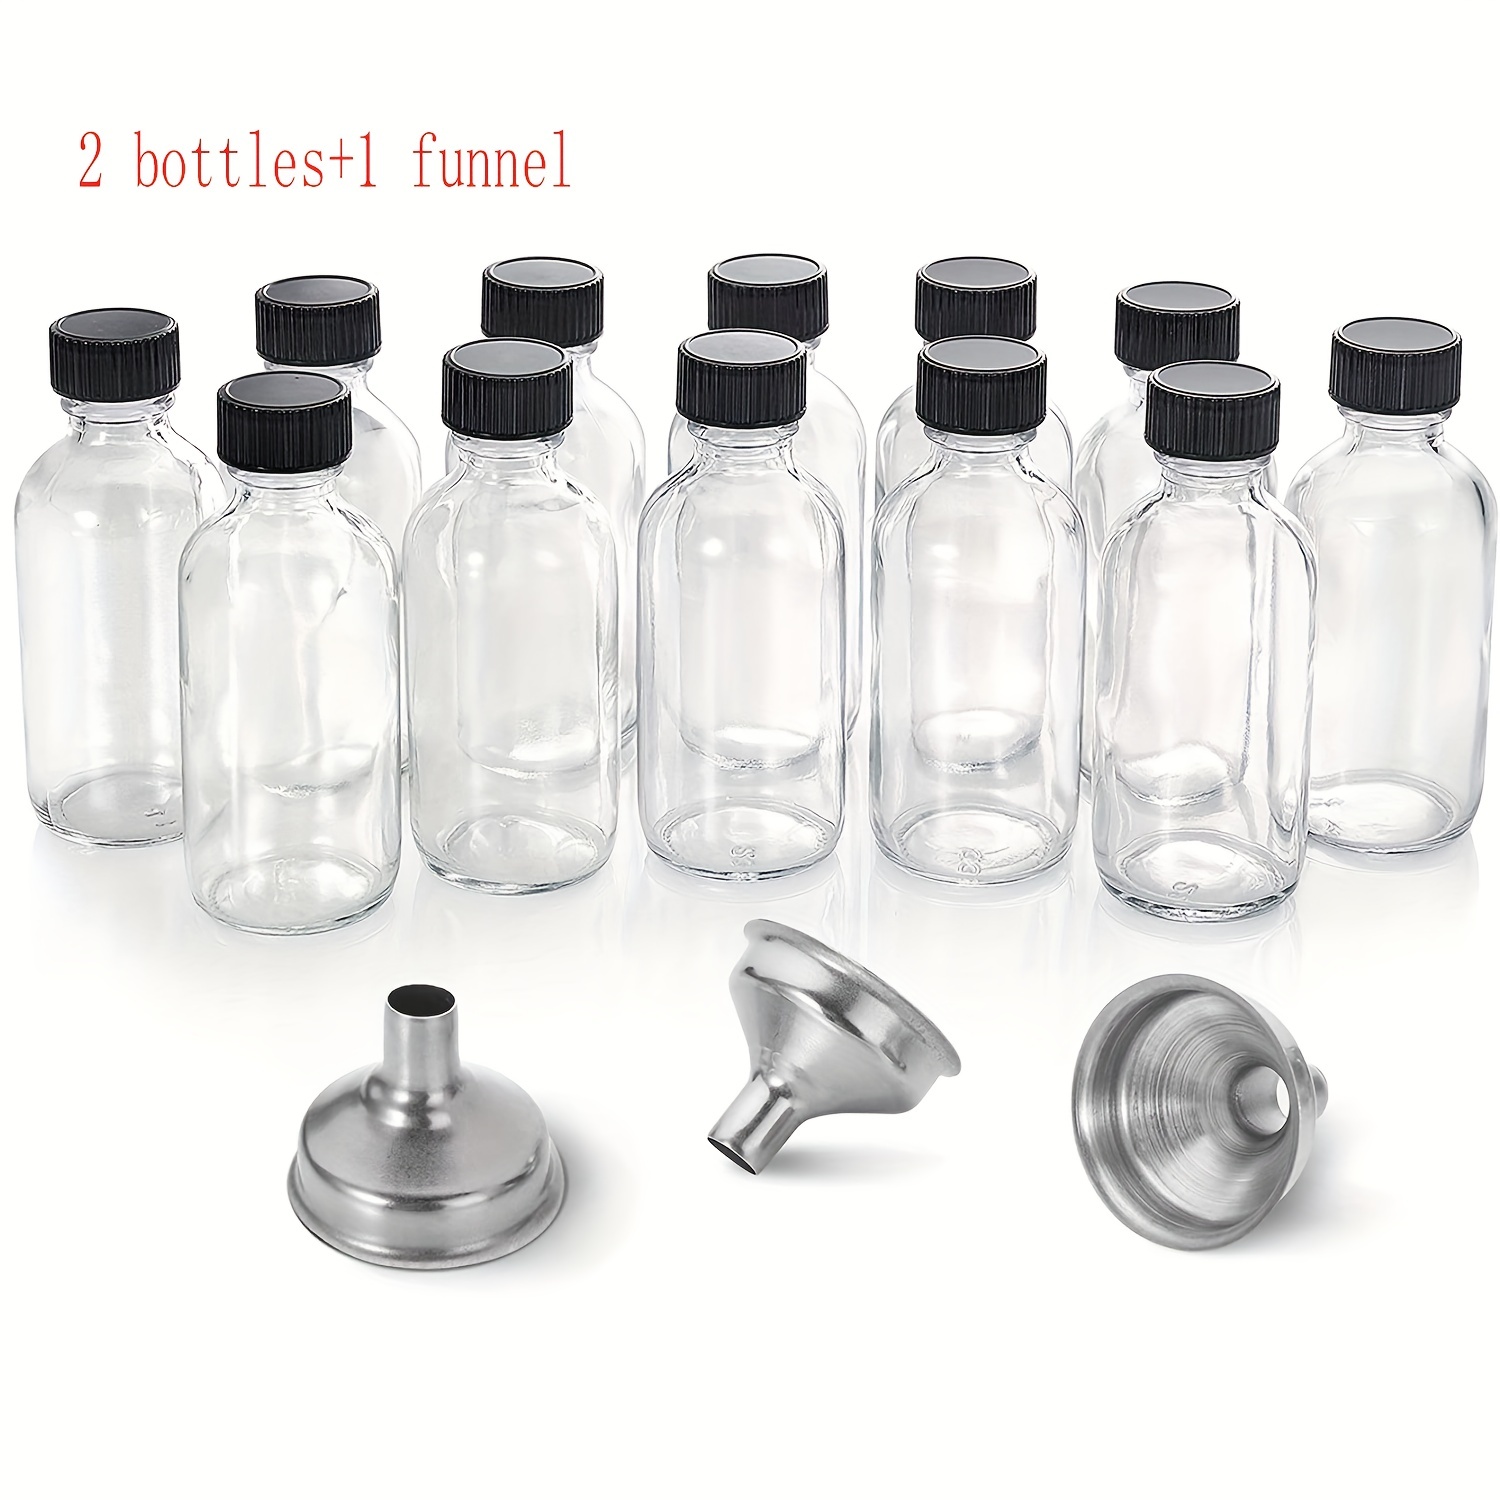 Kit de botellas de jugo – El paquete de chupitos de jugo incluye frascos de  vidrio transparente de 2 onzas, tapas a prueba de fugas, embudo, recetas